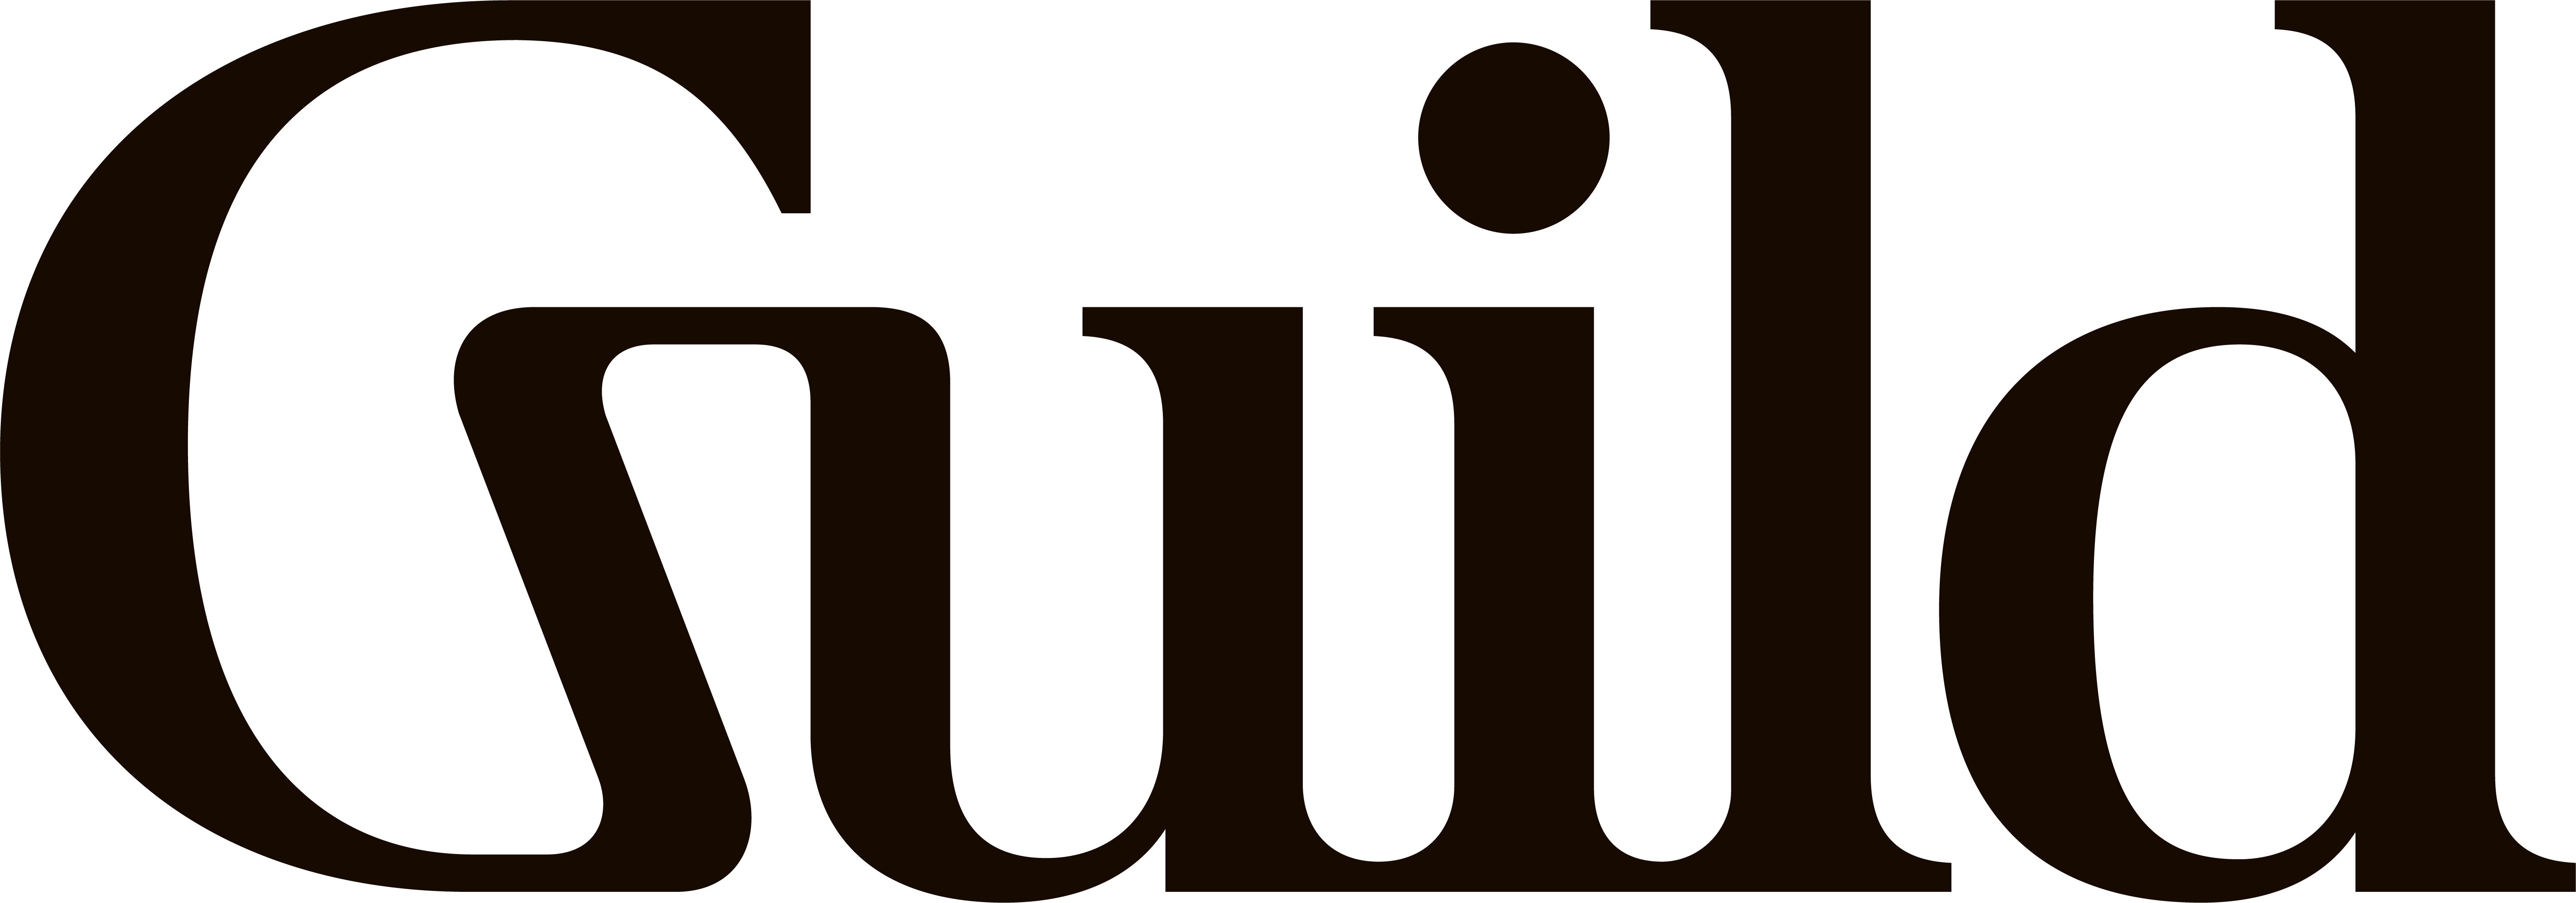 Guild Logo png images